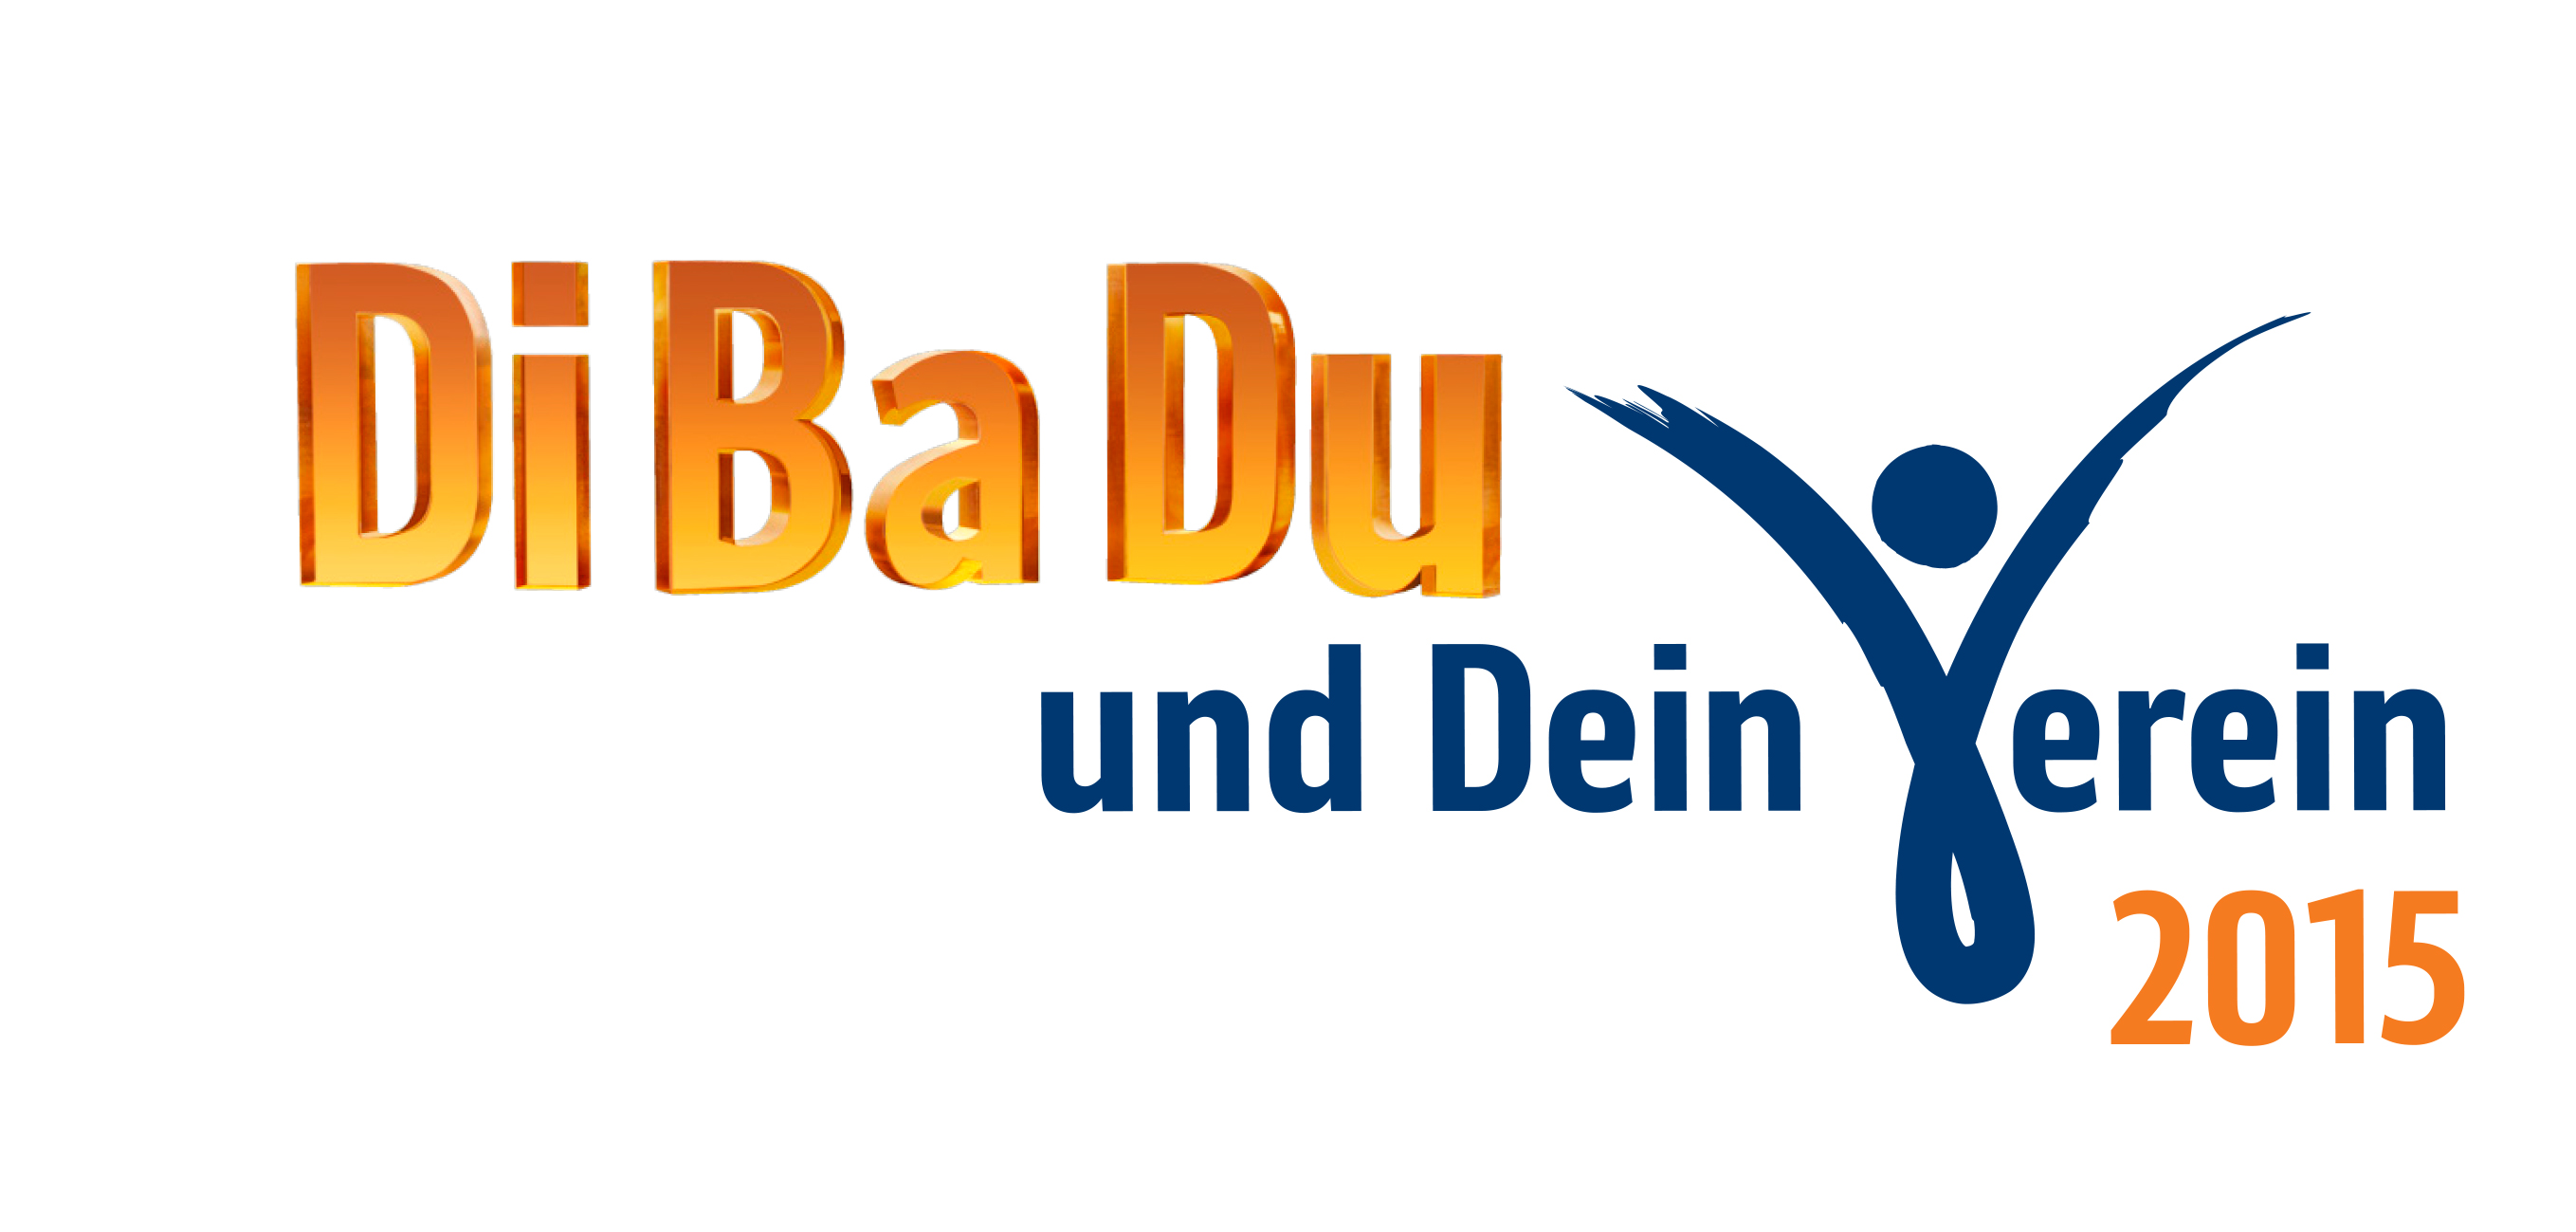 logo_dibadu_und_dein_verein_300dpi